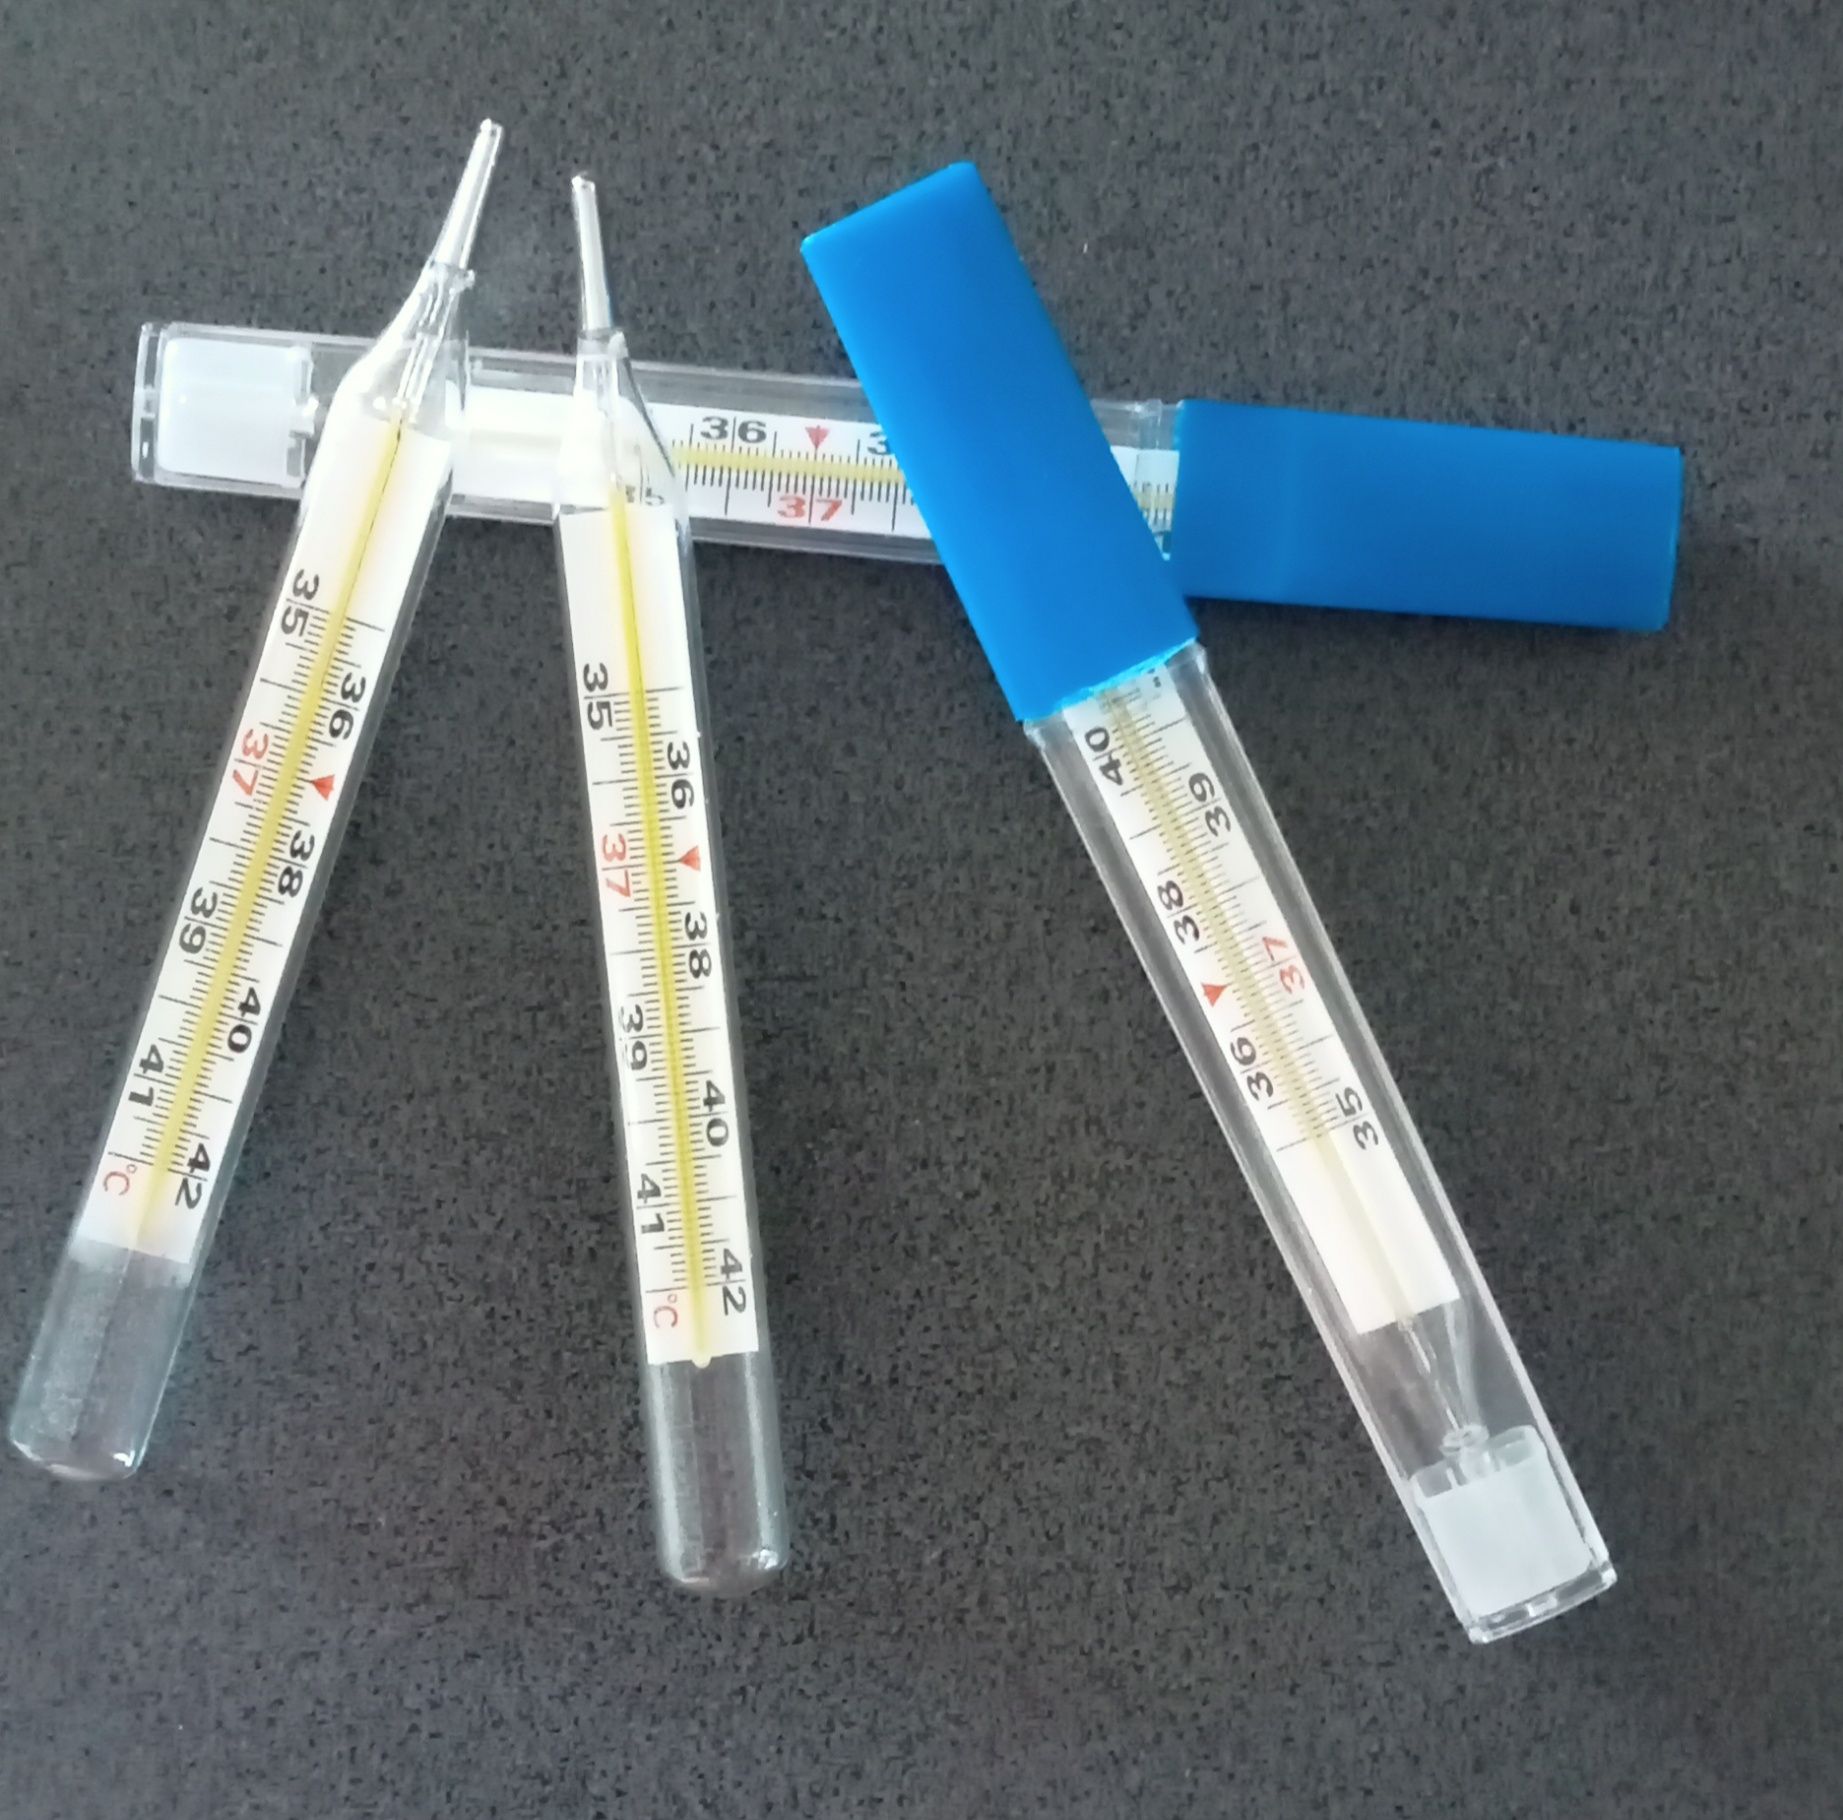 4 termometry szklane medyczne.